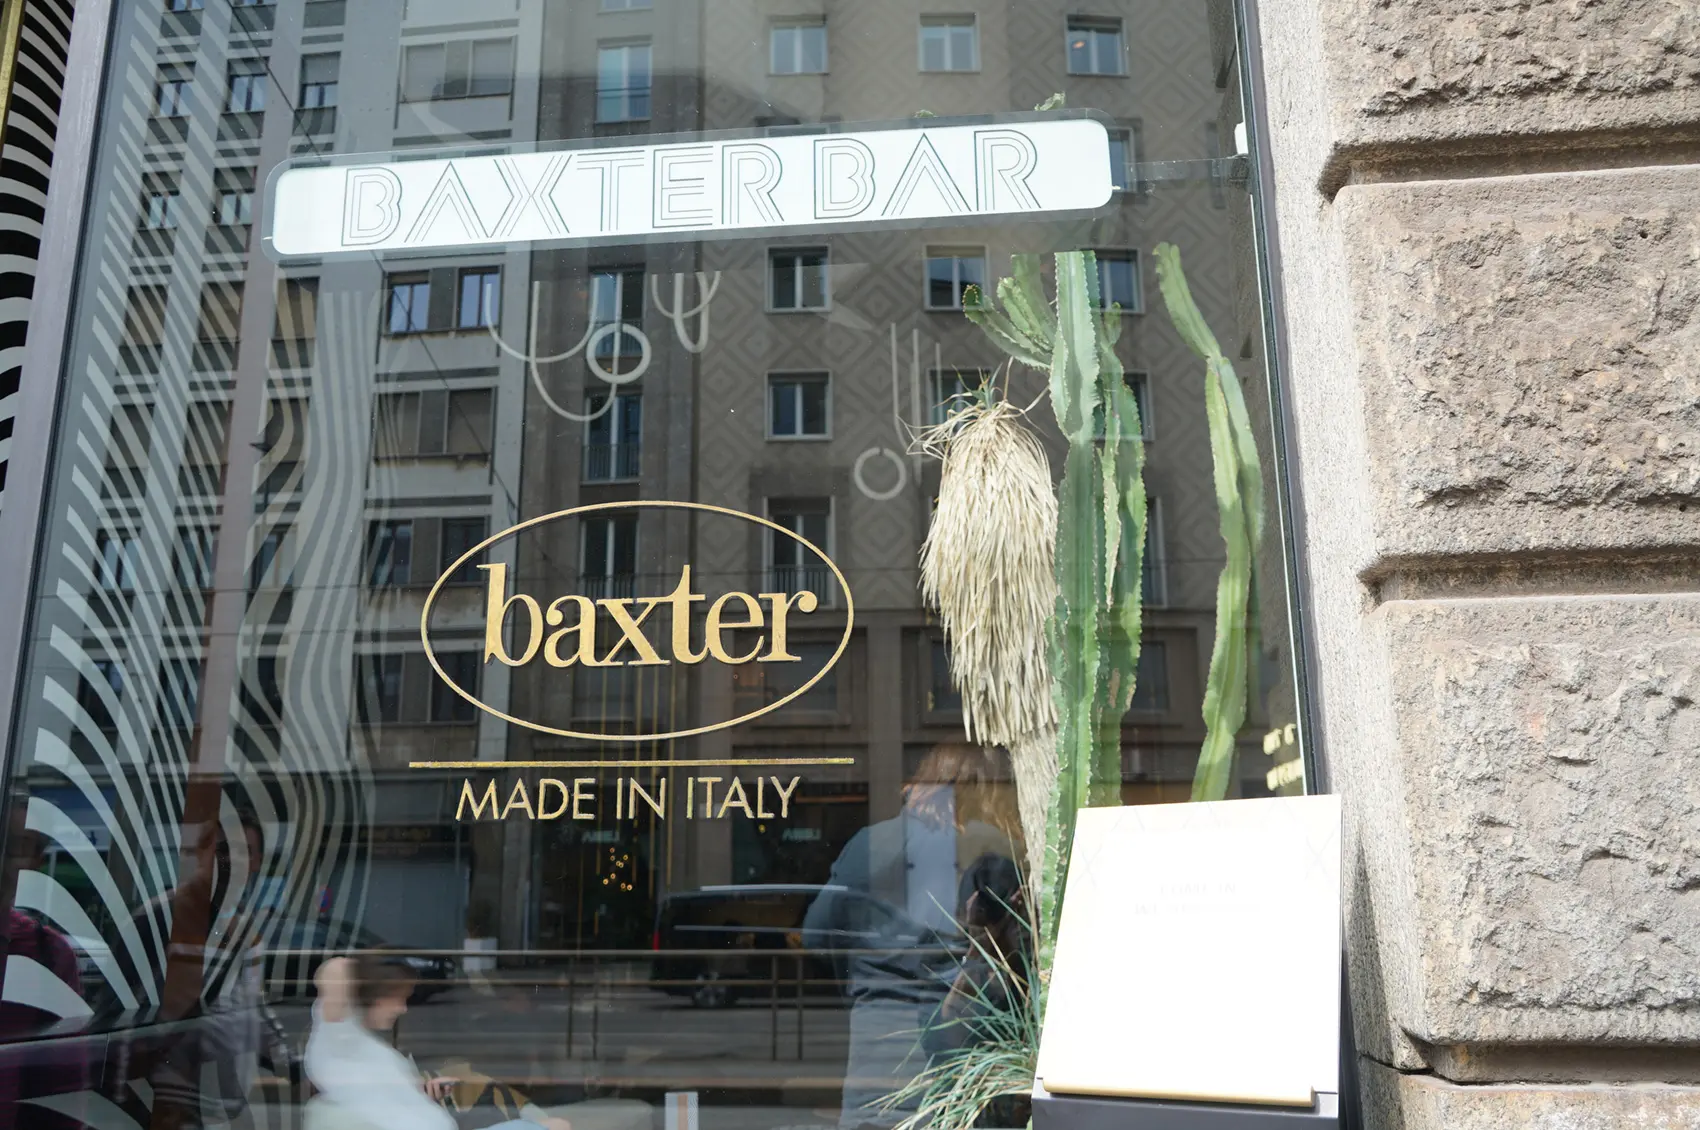 ふいに見つけた"Baxter Bar" (バクスター・バー)で一息入れる photo by IL DESIGN